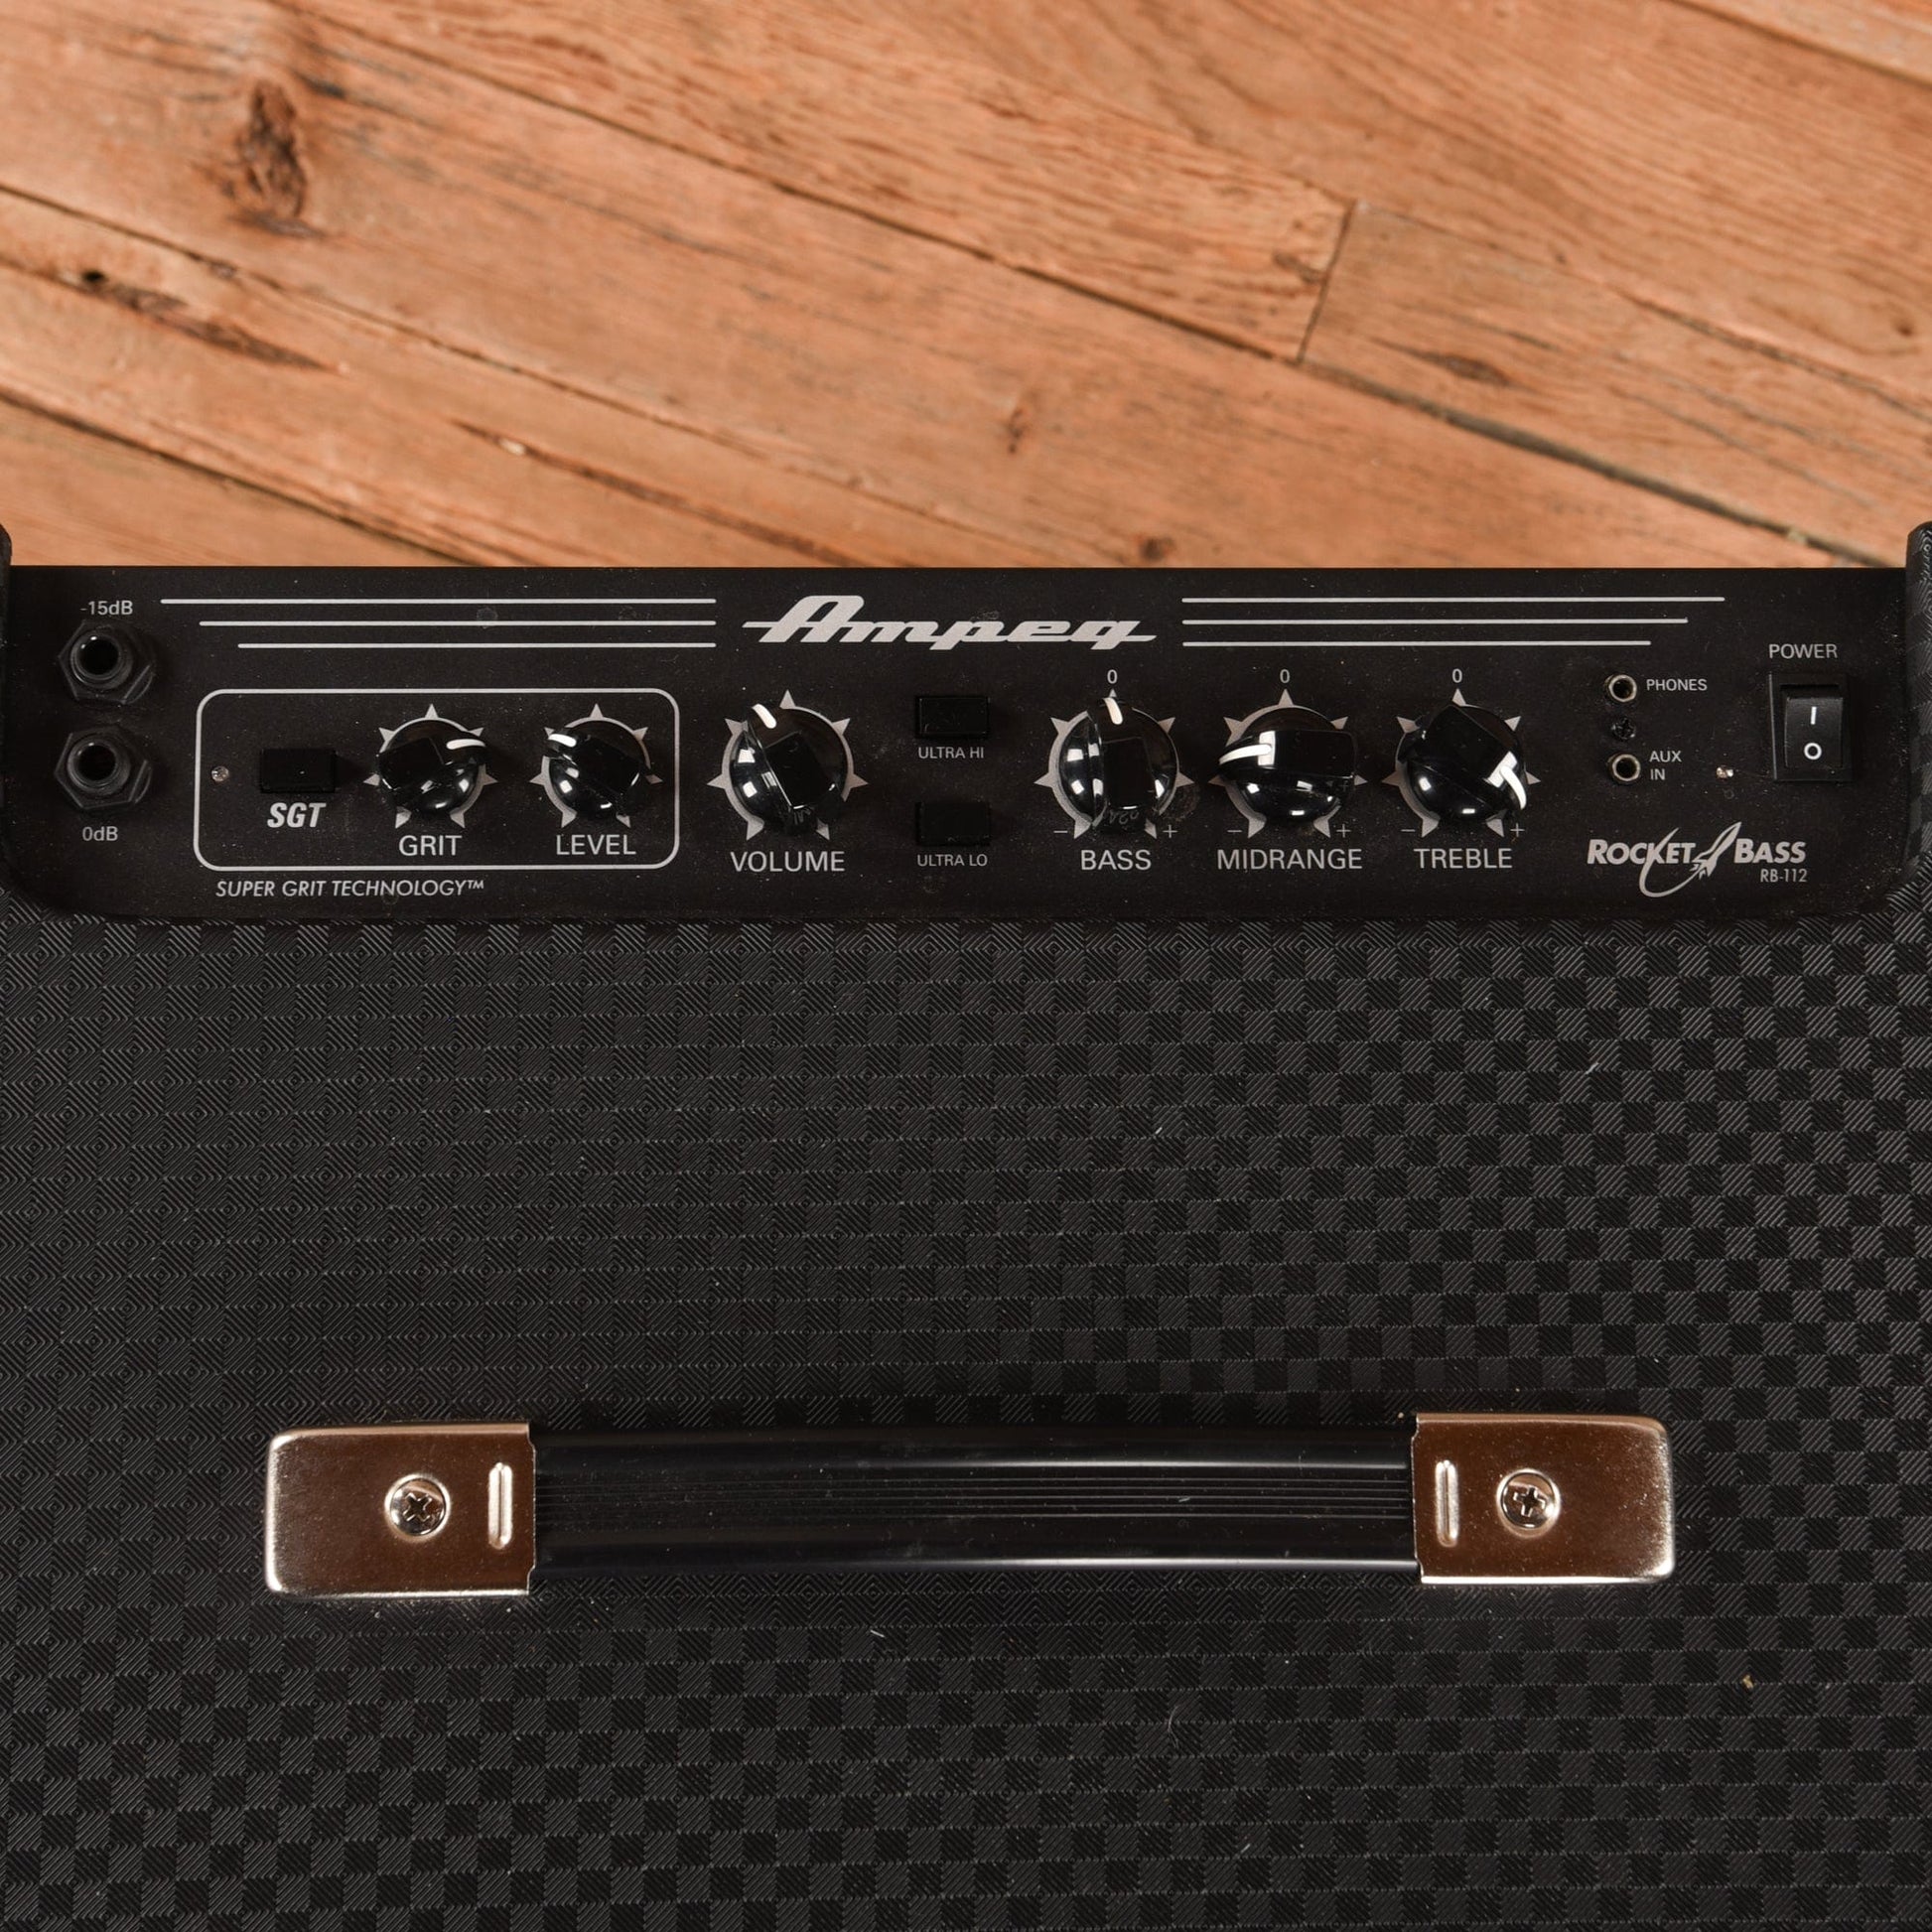 Ampeg RB-112 Rocket Bass 100-Watt 1x12" Bass Combo Amps / Bass Cabinets